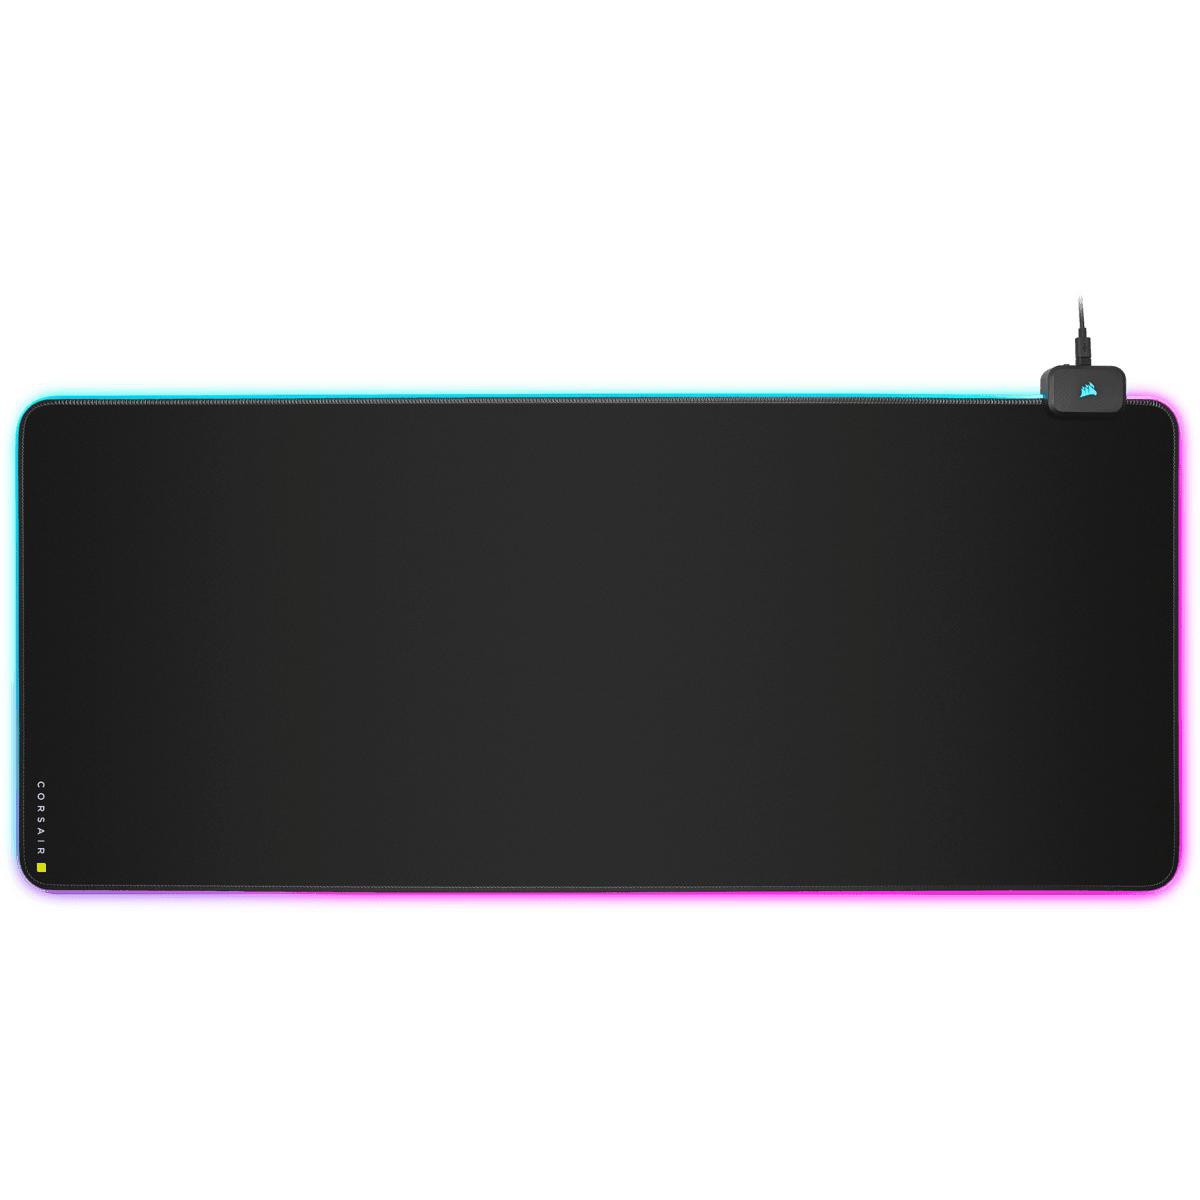 Corsair - MM700 RGB Extended - Tapis de souris